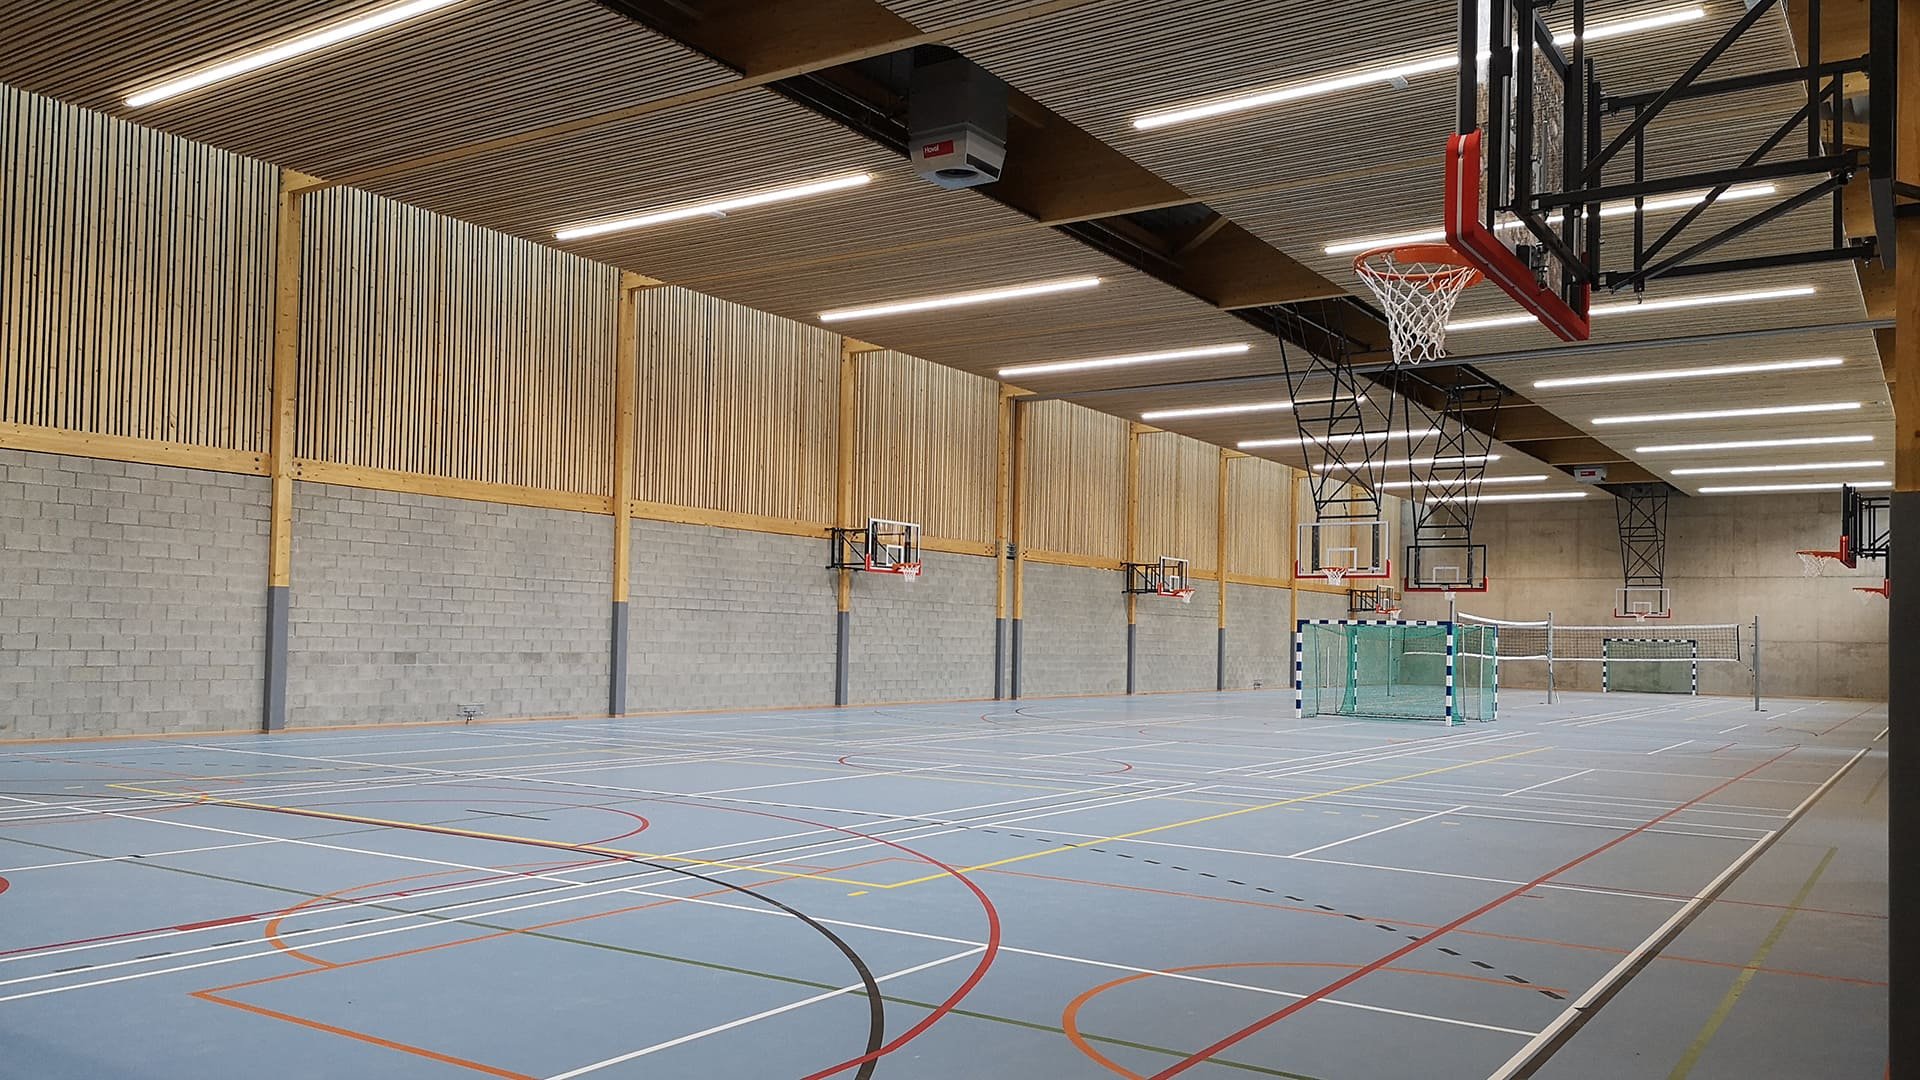 Intérieur de la salle de sport de l'école de L'Inda: on y voit un grand terrain de basket où il y a été déposé 2 goals de foots, 2 filets de volley. L'intérieur est très moderne en bois et beton